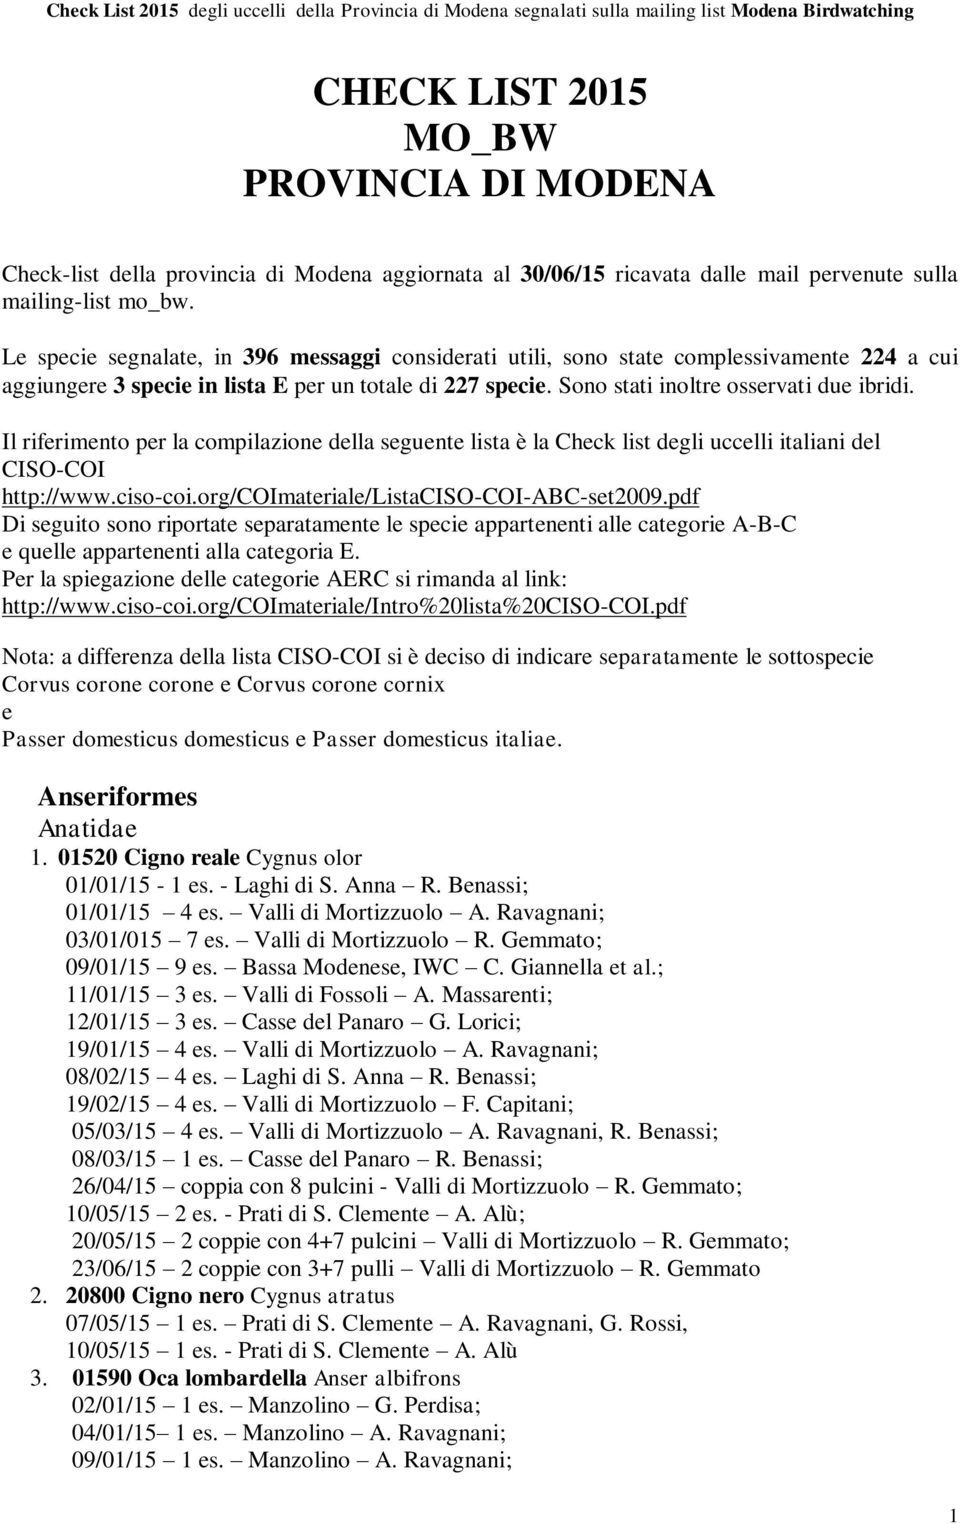 Il riferimento per la compilazione della seguente lista è la Check list degli uccelli italiani del CISO-COI http://www.ciso-coi.org/coimateriale/listaciso-coi-abc-set2009.